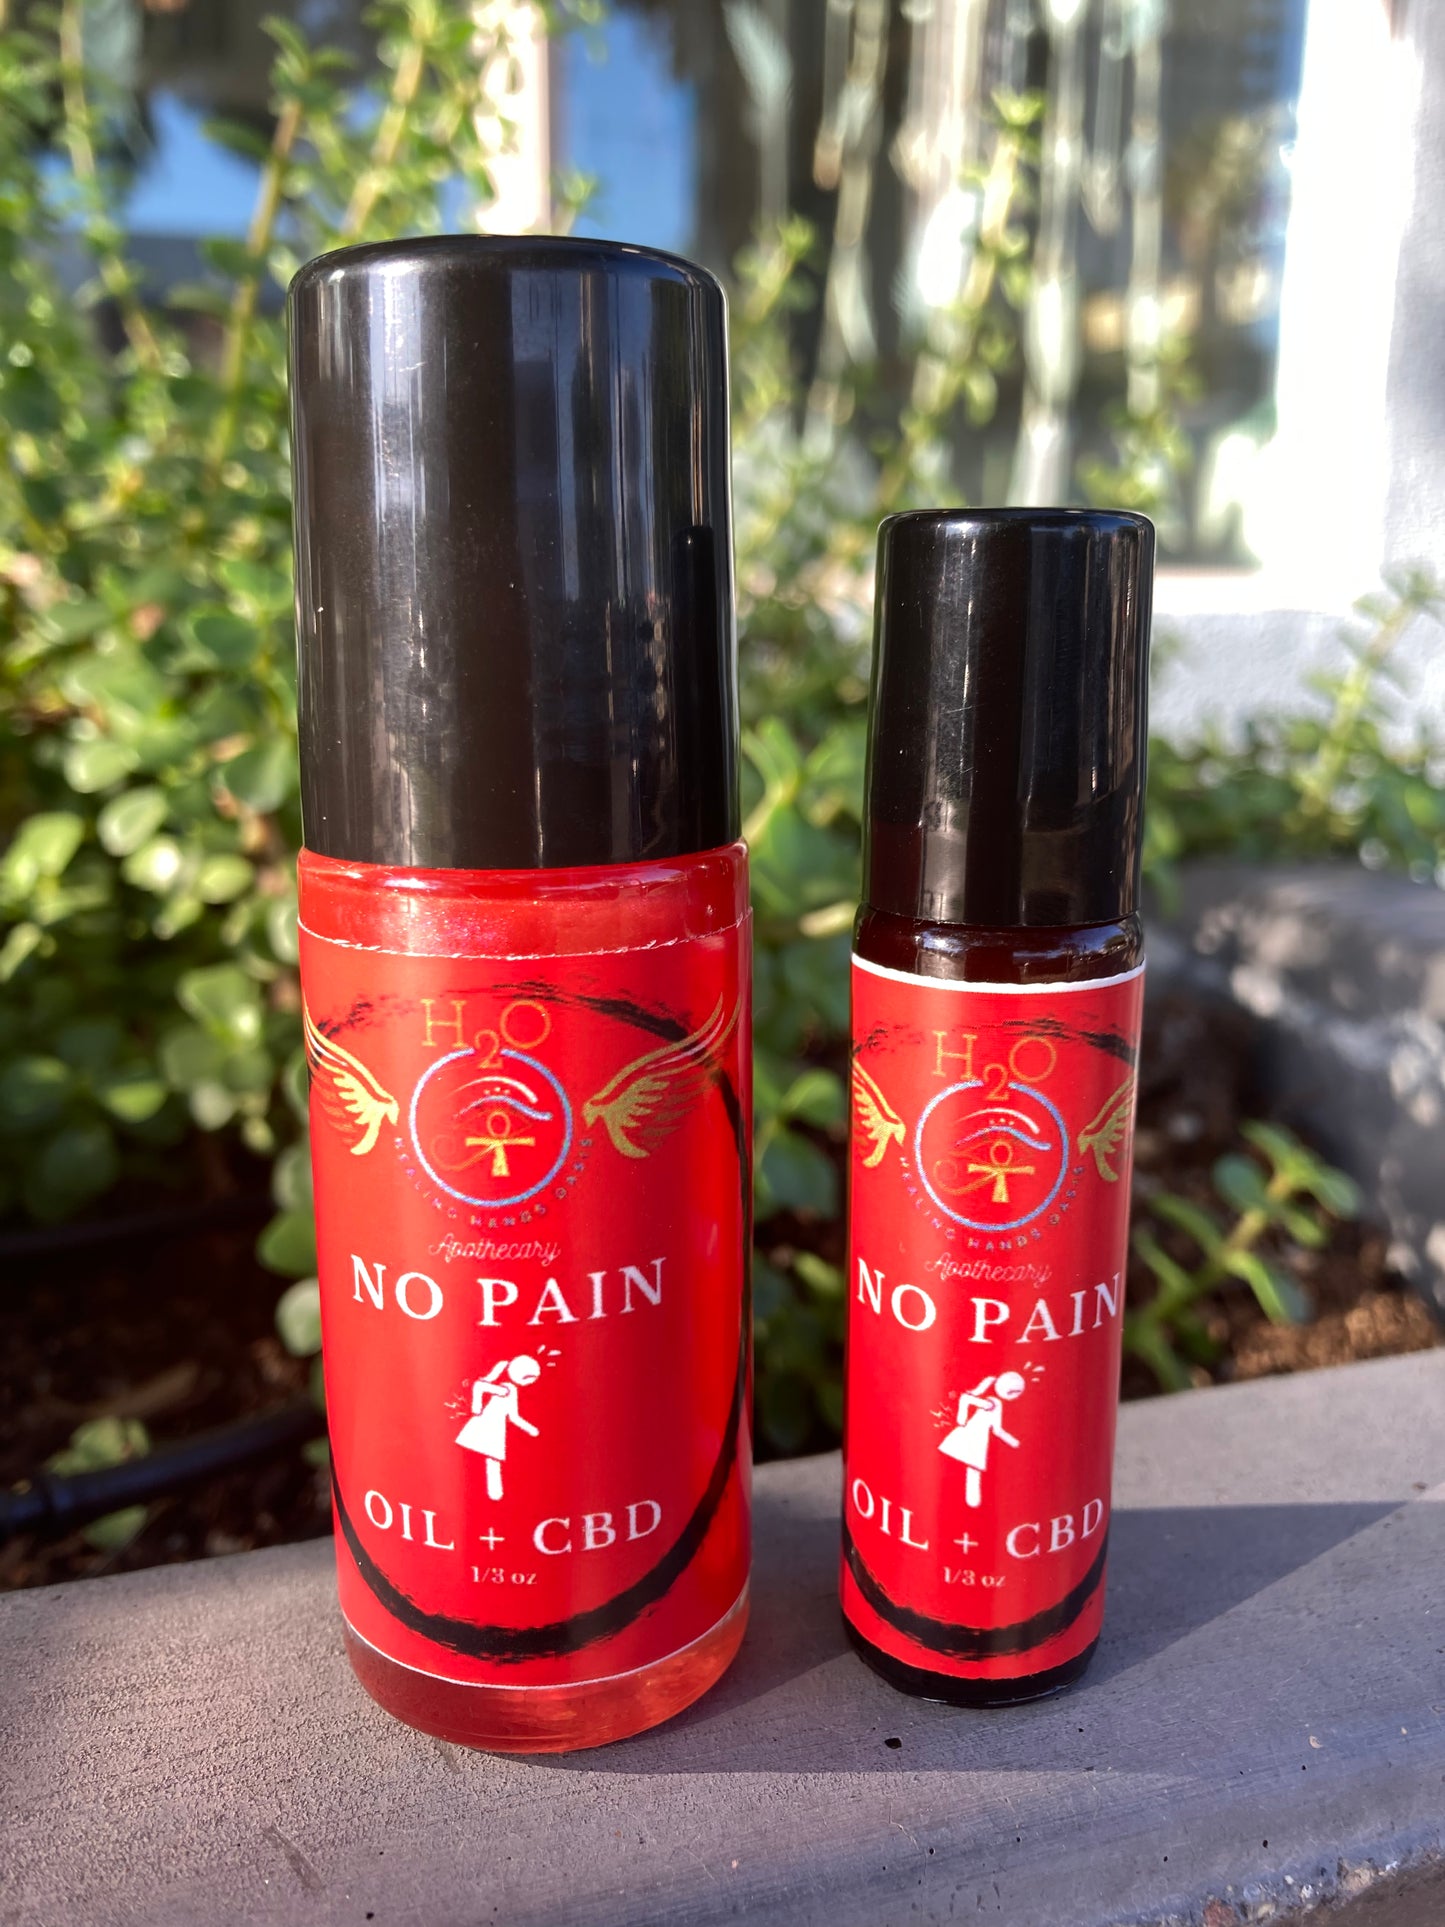 No Pain Reiki Oils + Full Spectrum Hemp Oil